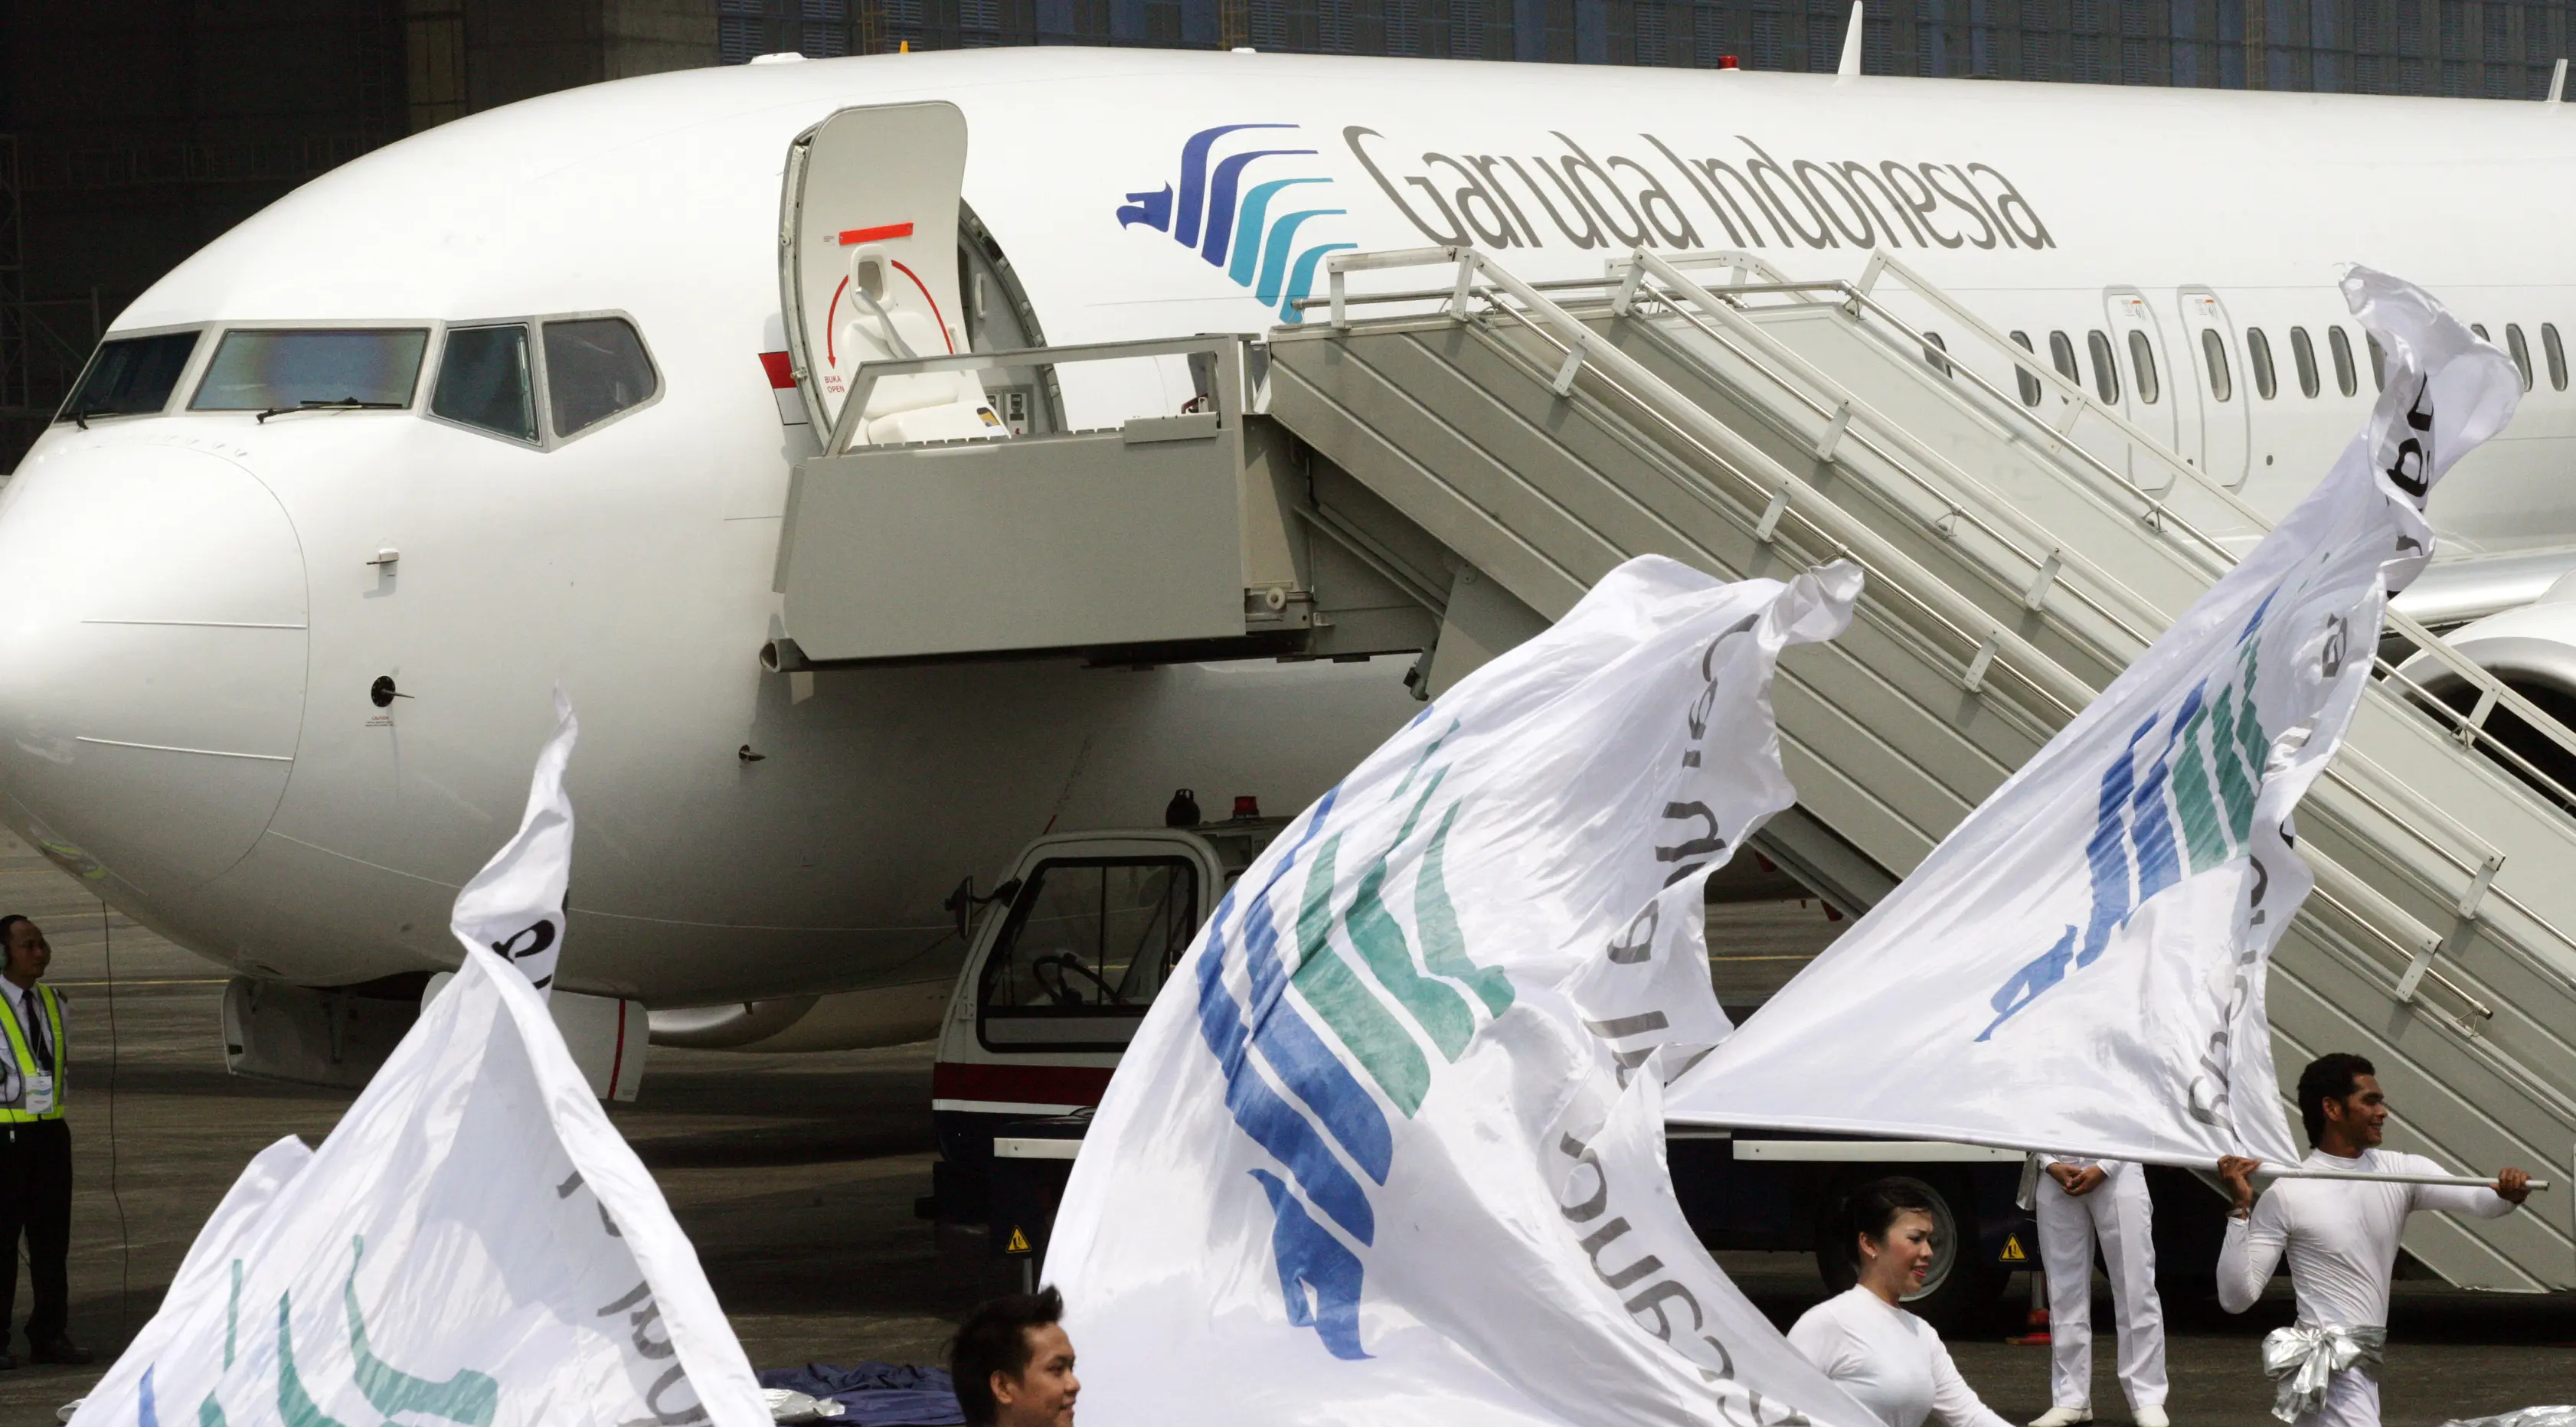 Pesawat Airbus A330 yang dipesan Garuda Indonesia tiba di Bandara Soekarno Hatta pada  23 Juli 2009. (AFP / Arif Ariadi)